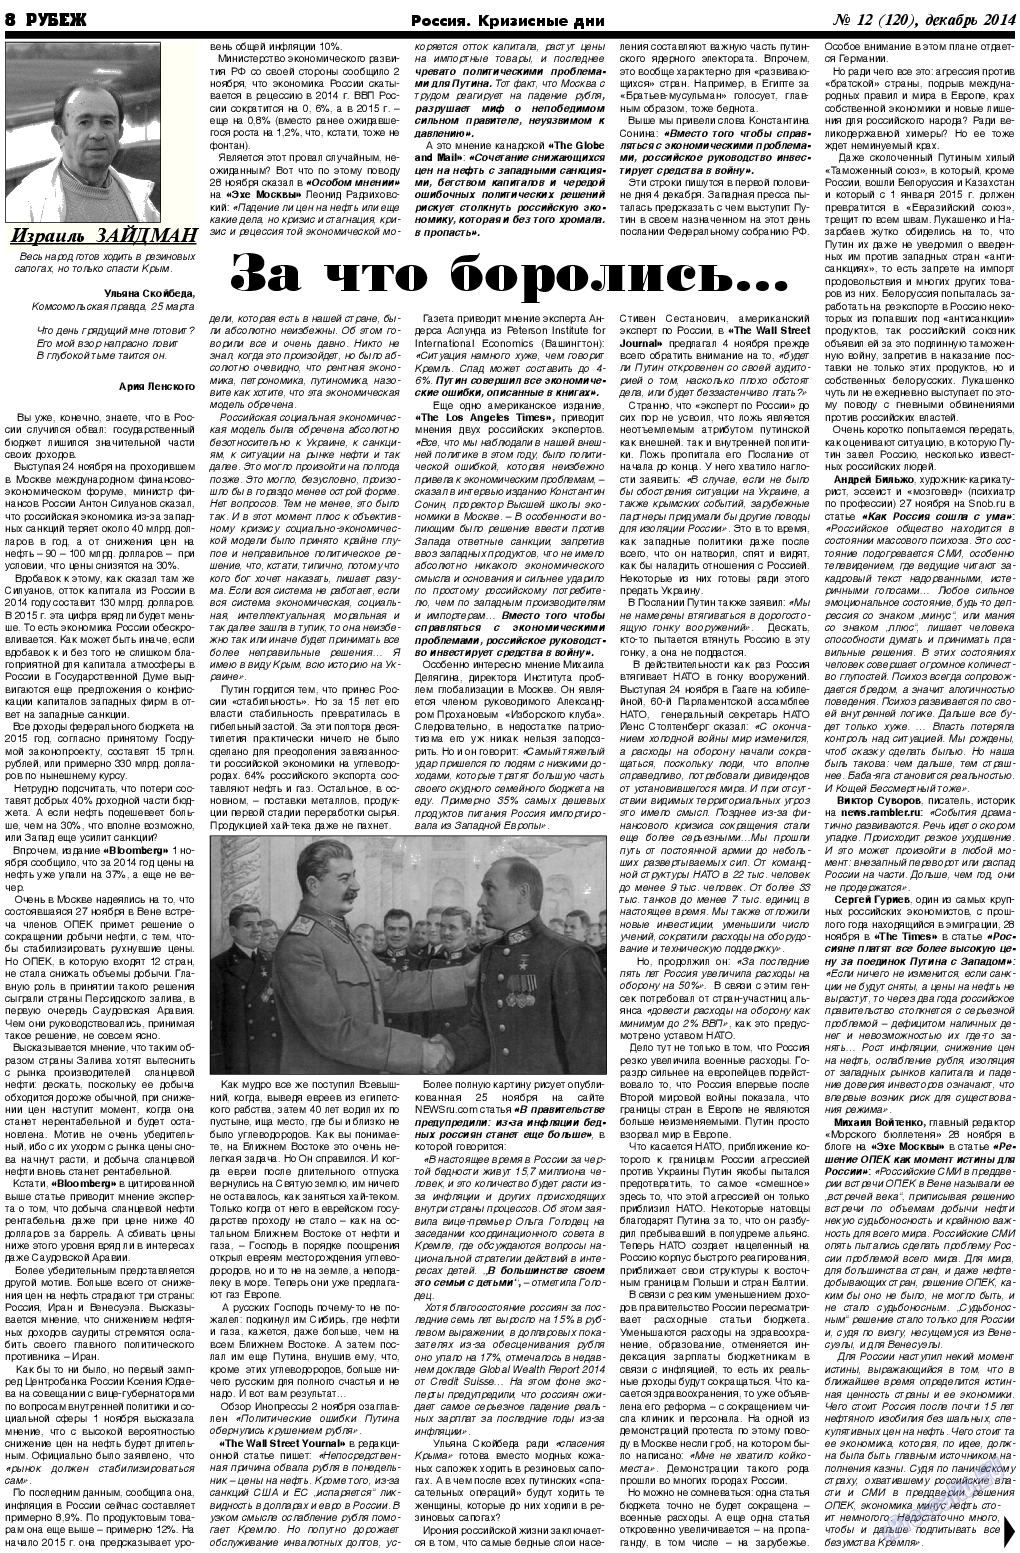 Рубеж (газета). 2014 год, номер 12, стр. 8